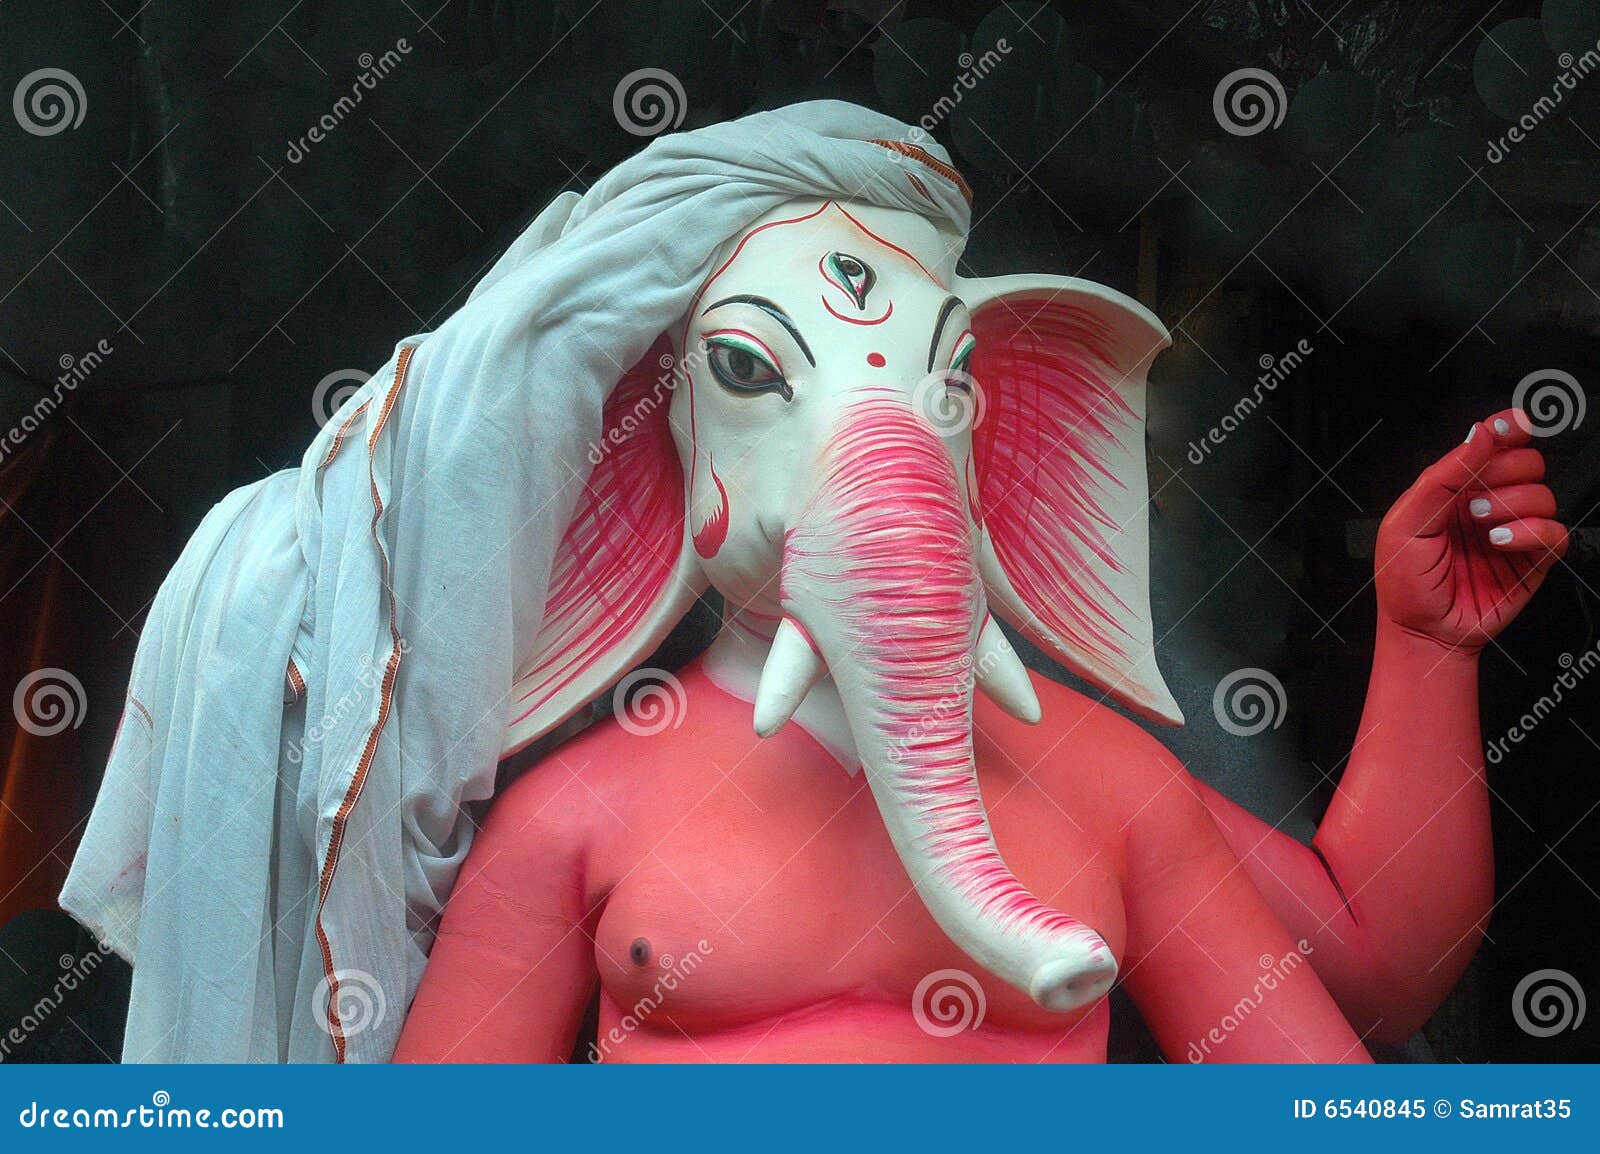 elephant headed god ganesha